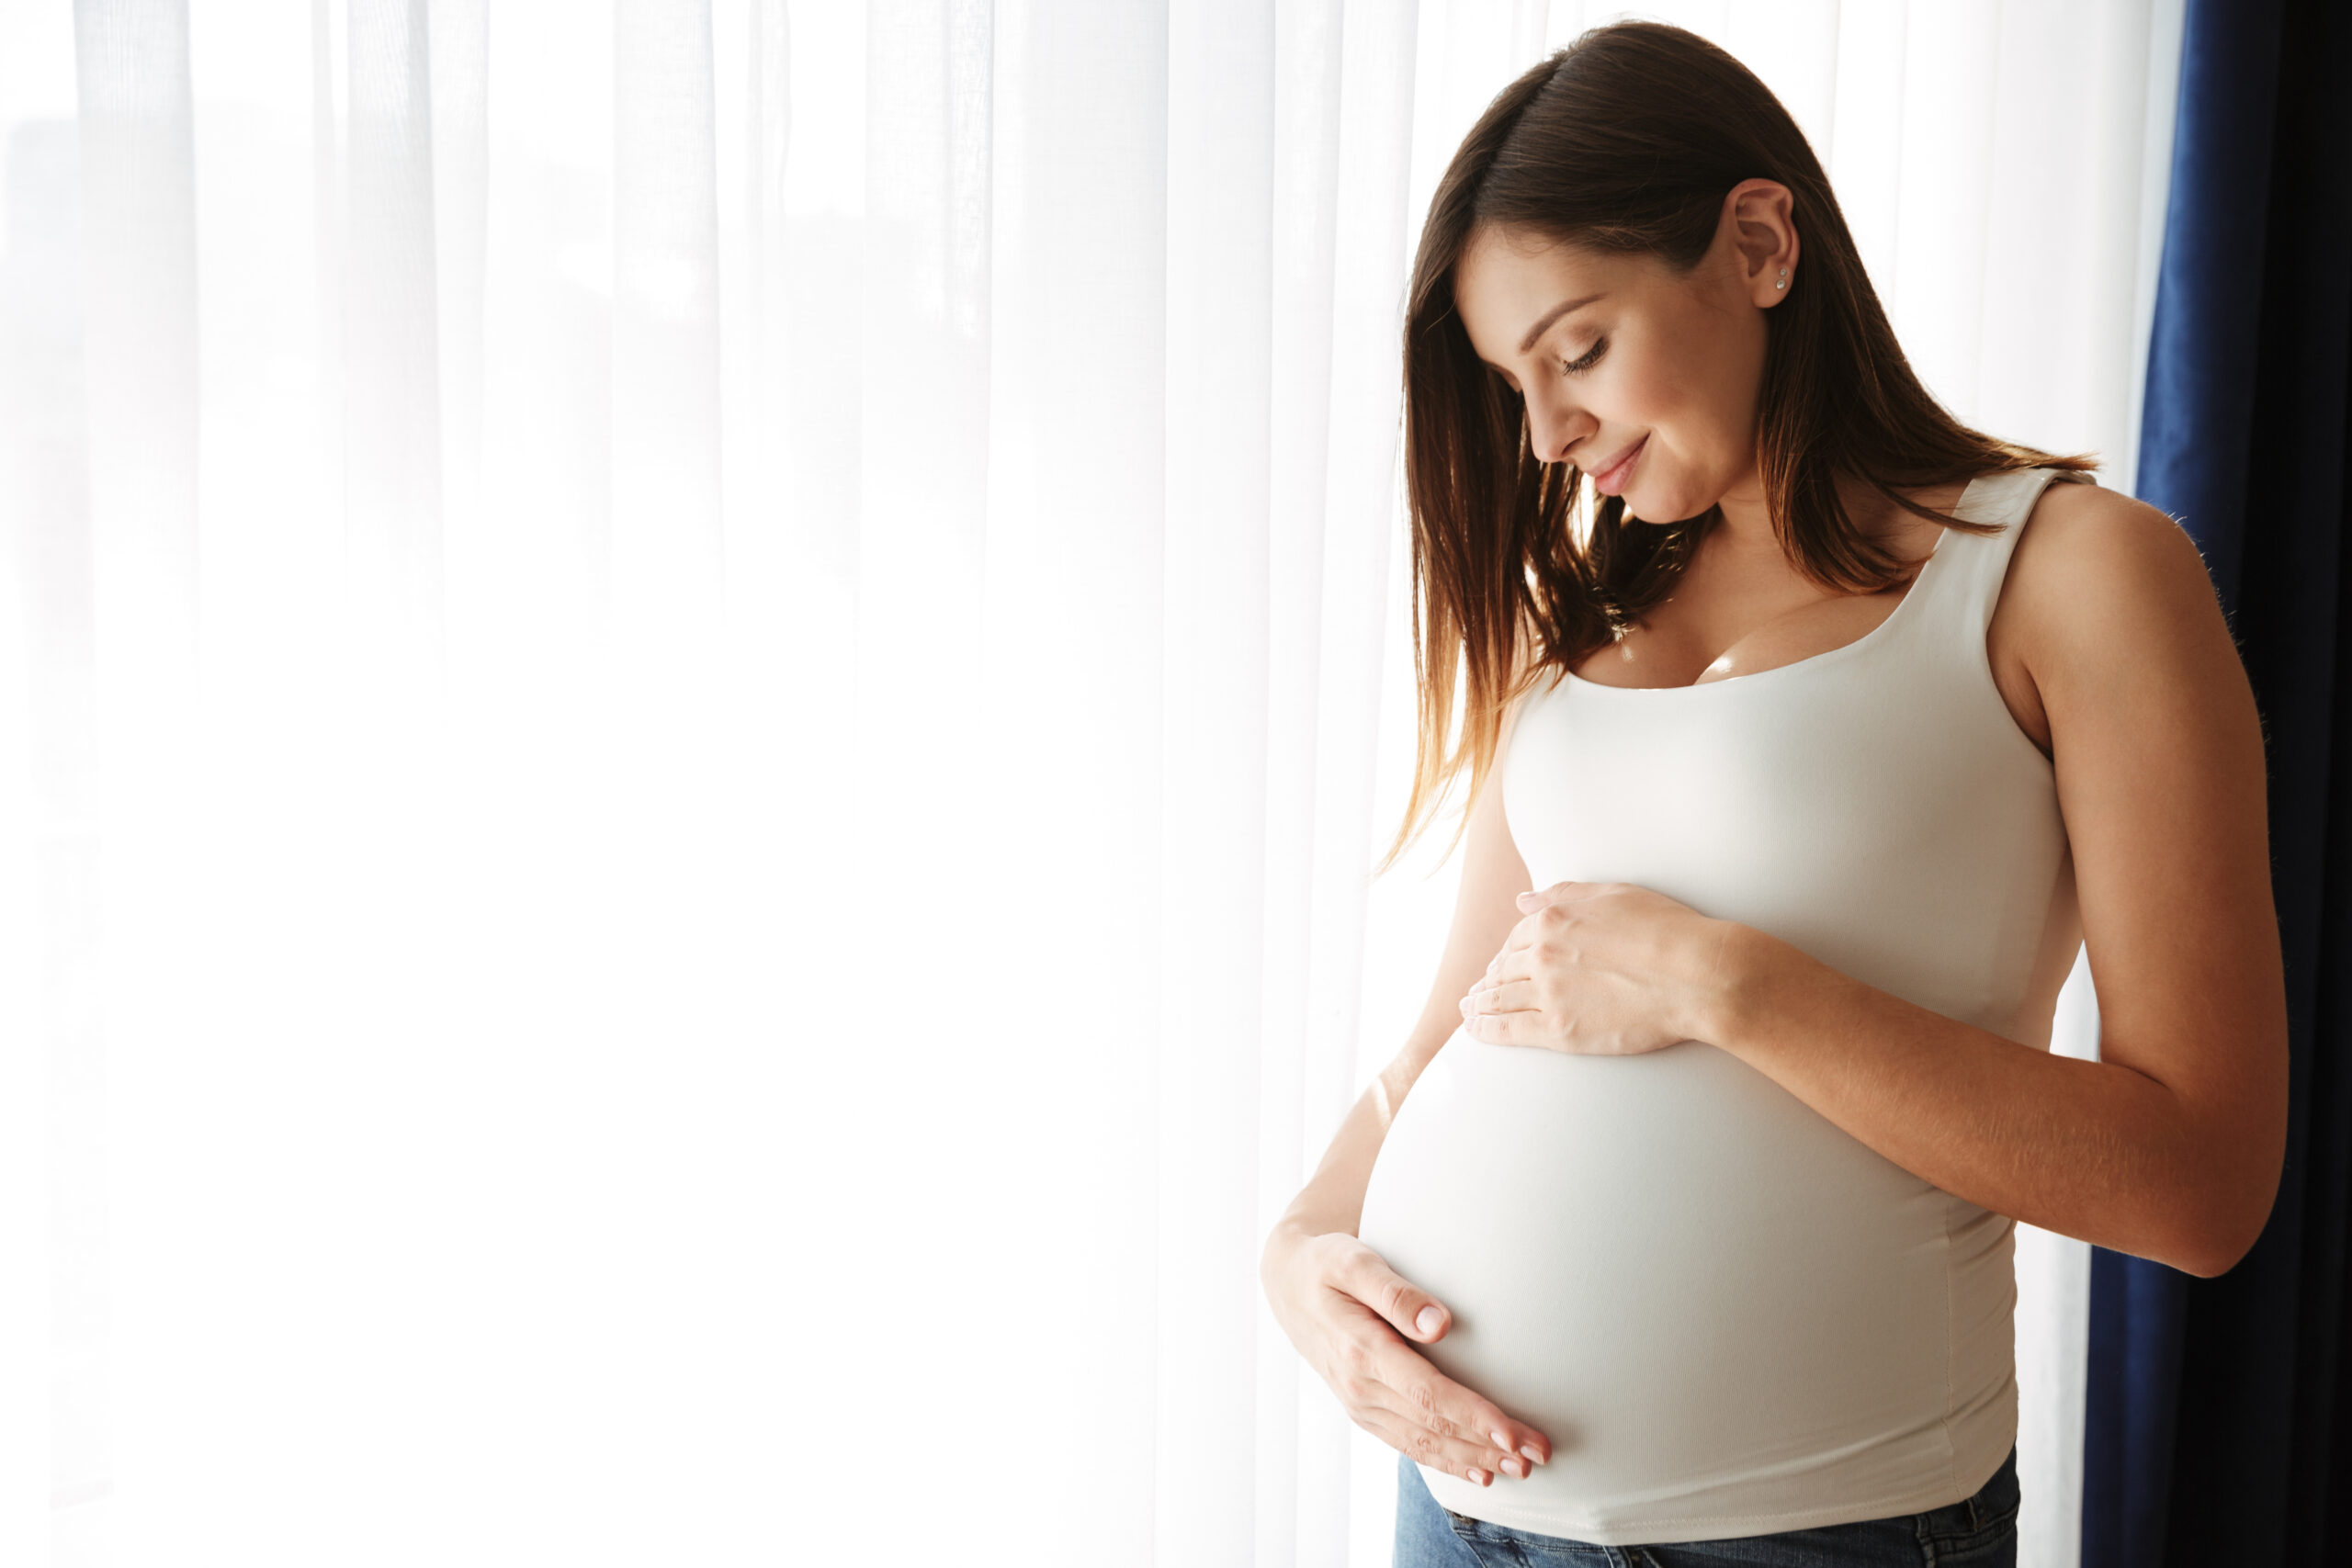 Cơ thể mẹ bầu không đáp ứng kịp với những thay đổi của thời tiết, sức đề kháng giảm khiến cho mẹ dễ mắc phải các bệnh về đường hô hấp